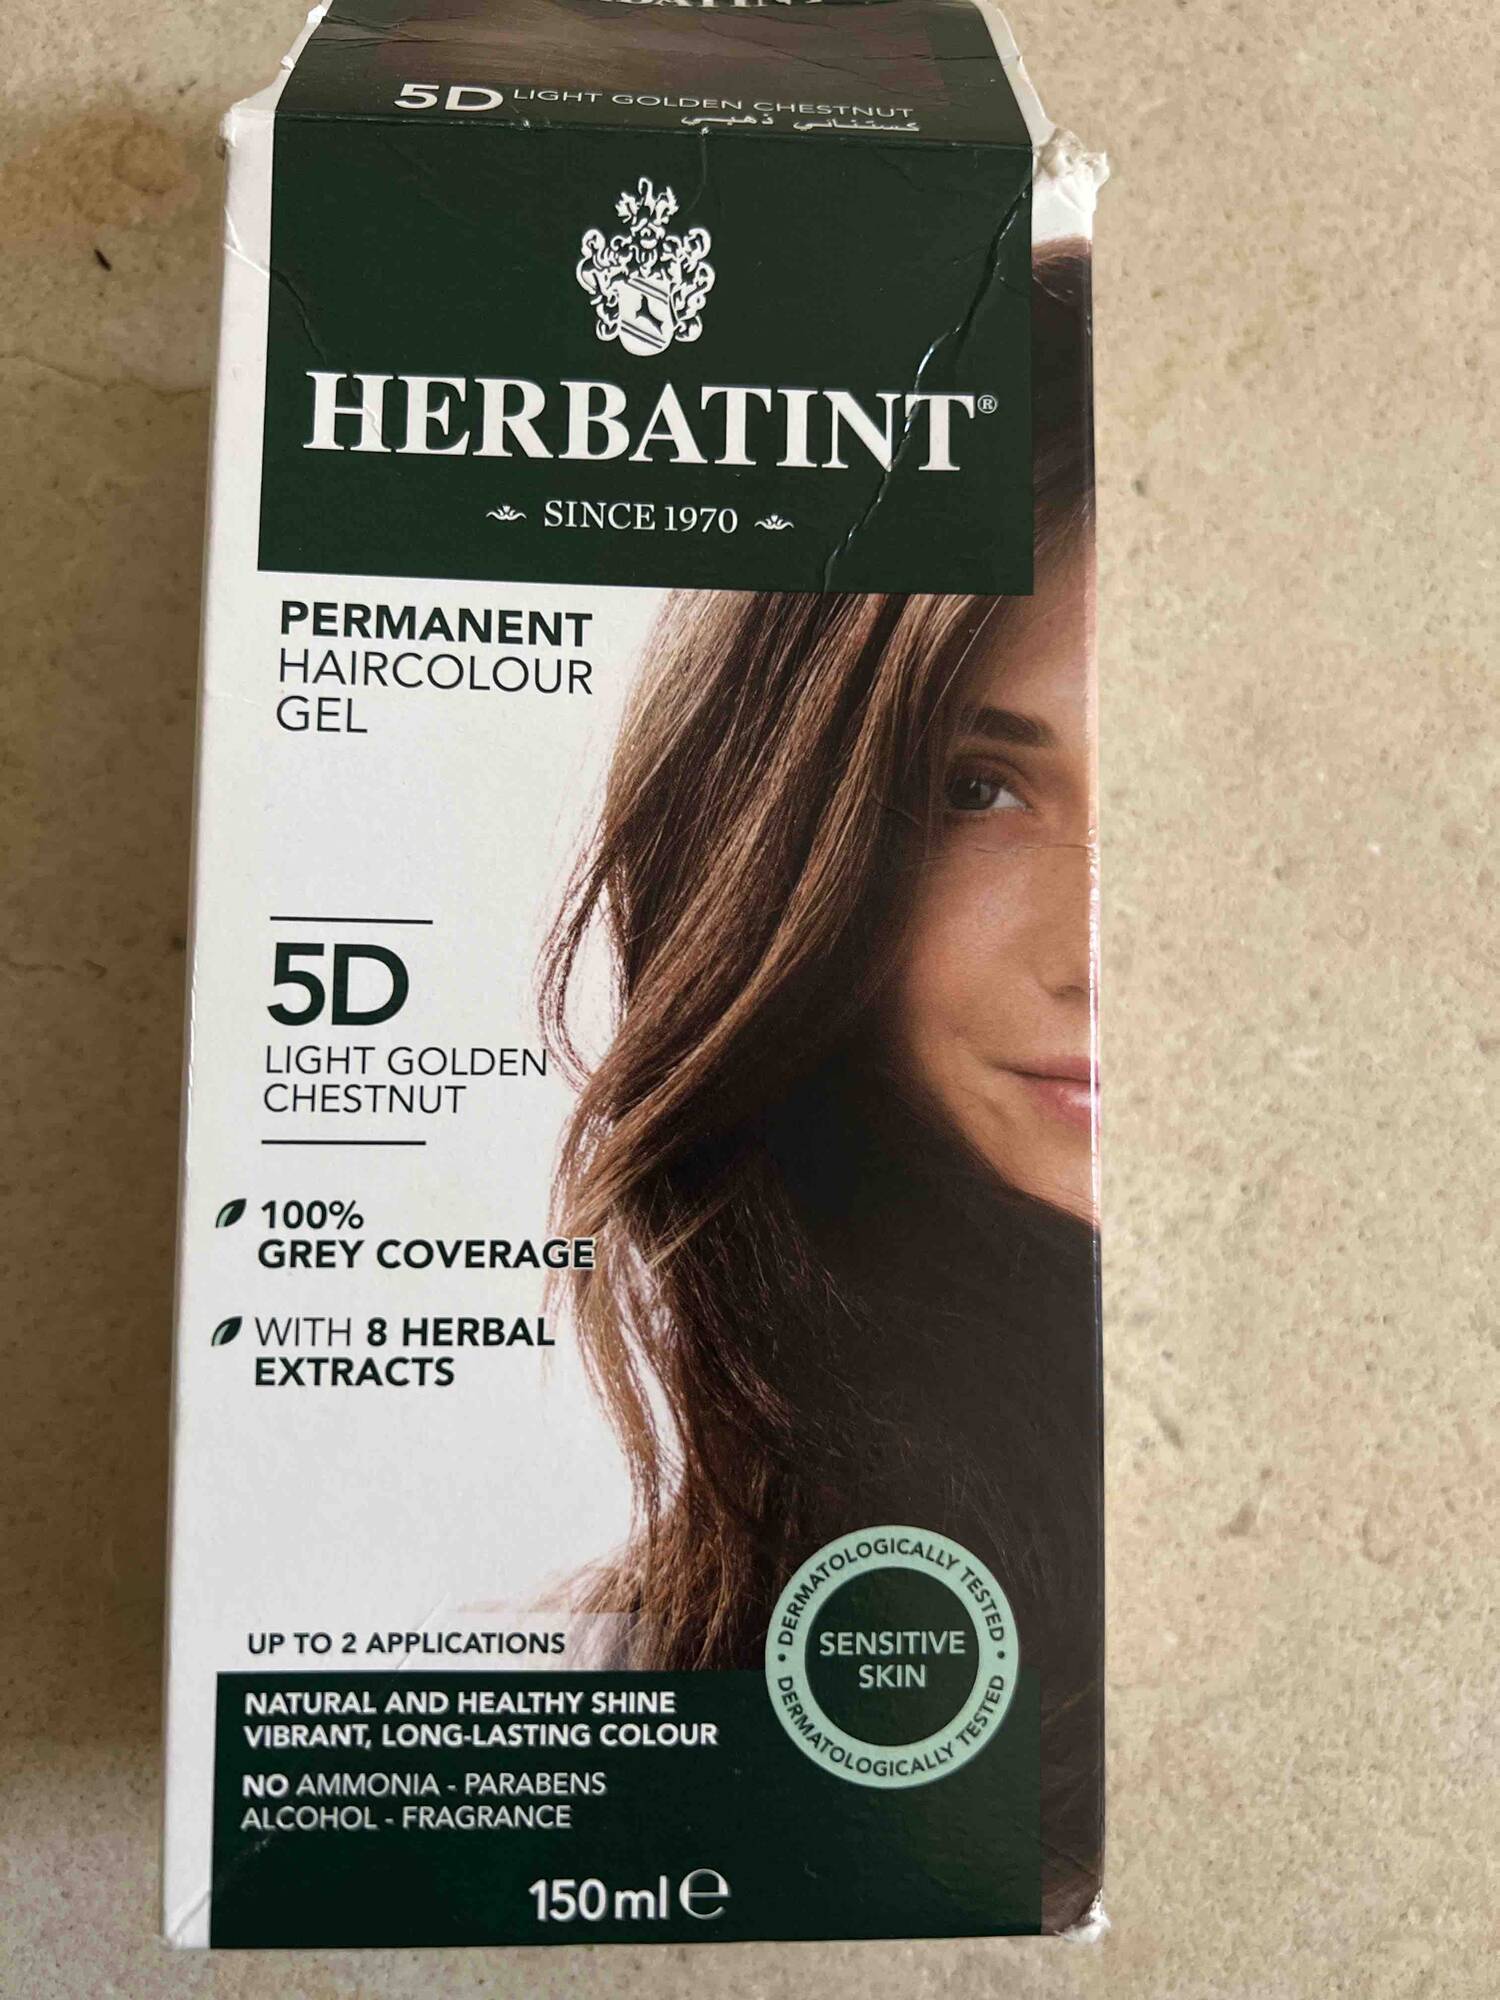 HERBATINT - 5D light golden chestnut - Permanent haircolour gel